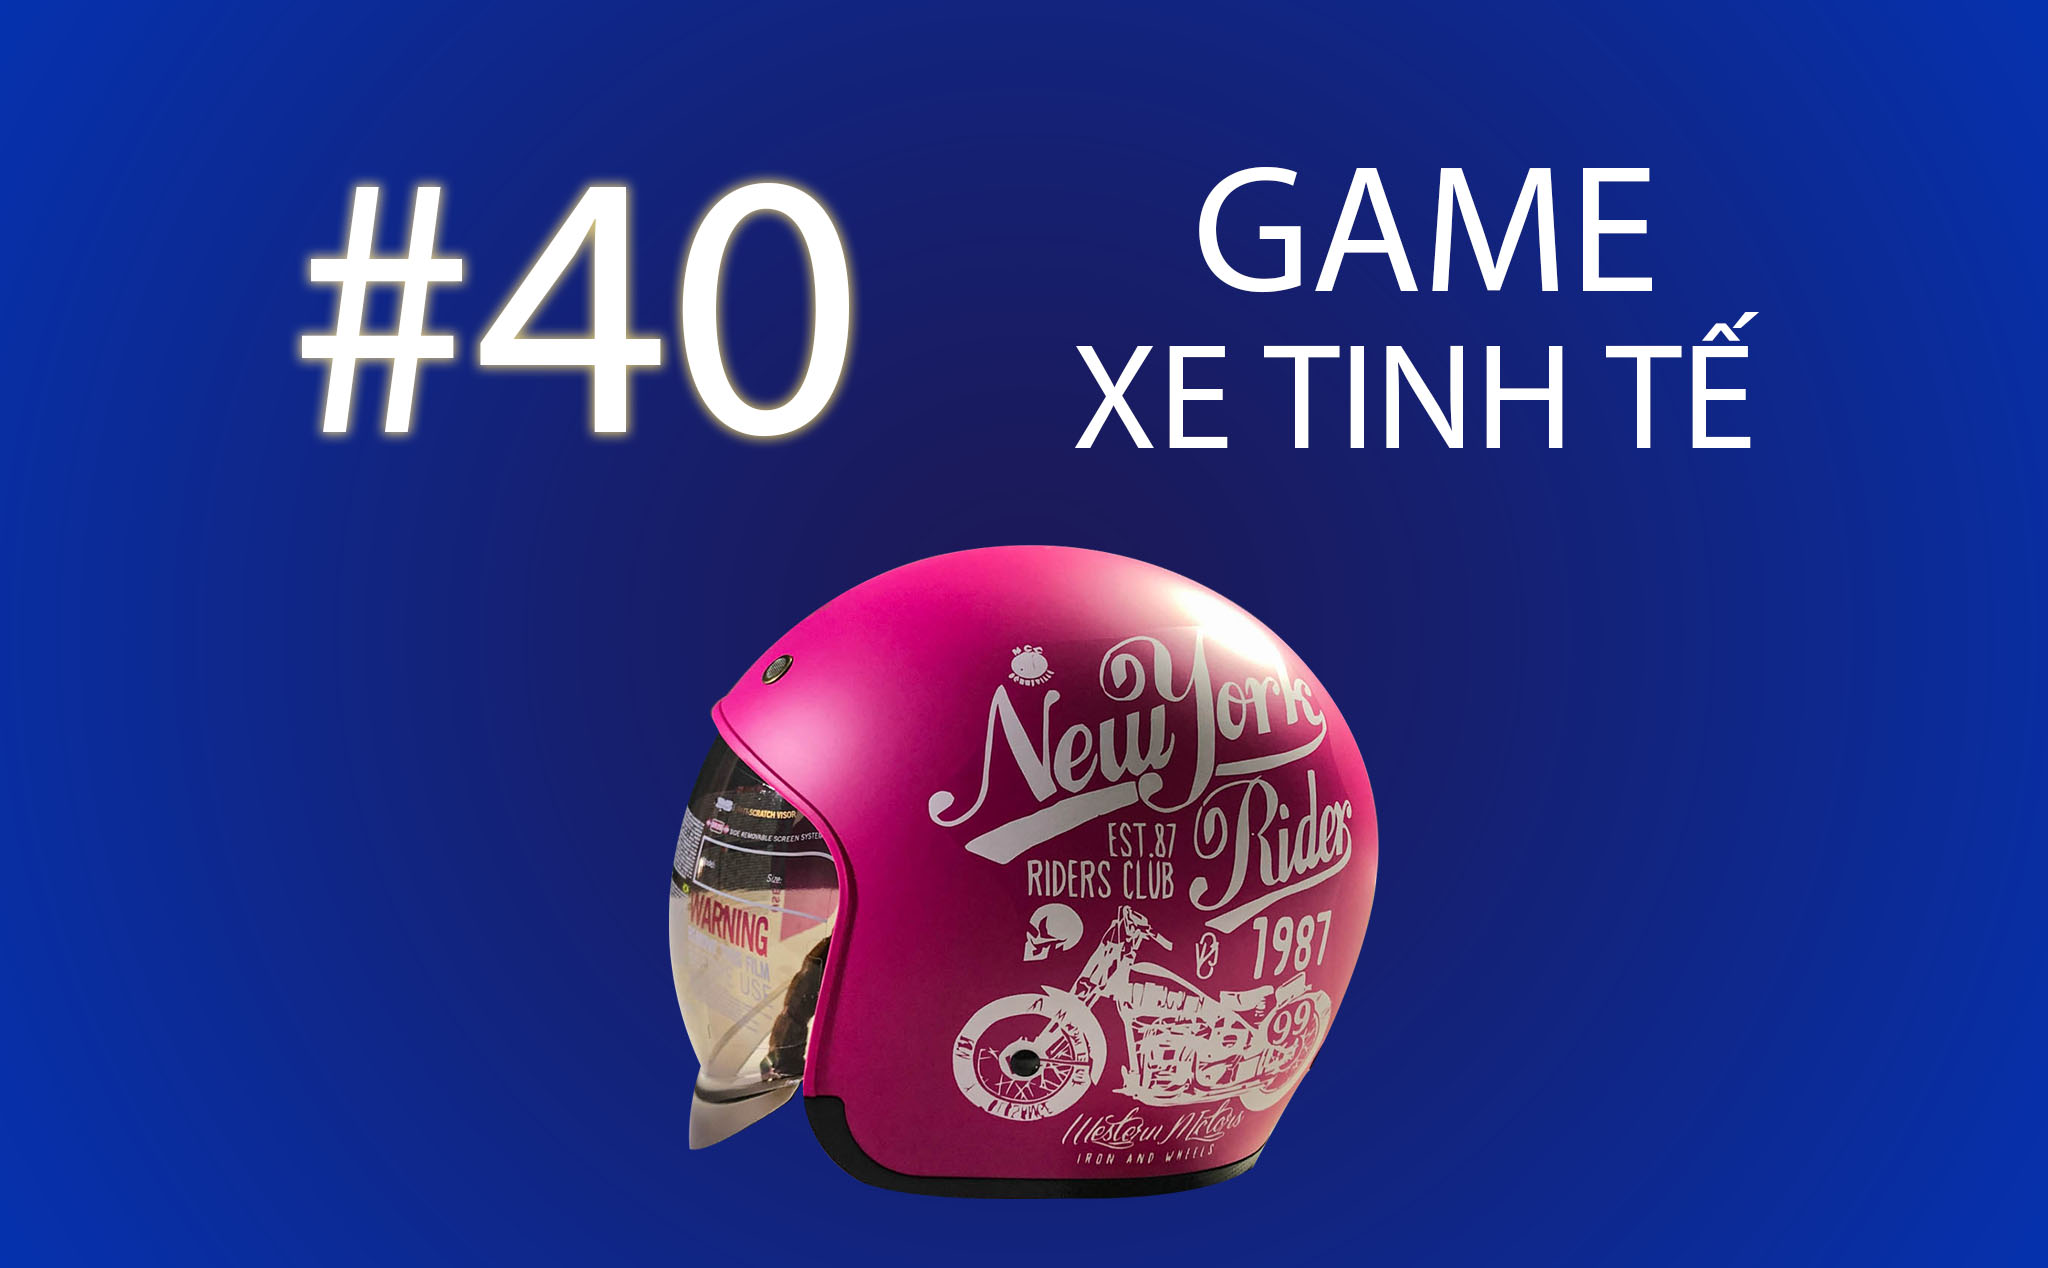 Game Xe Tinh tế #40: Tặng nón bảo hiểm Royal M139 màu hồng